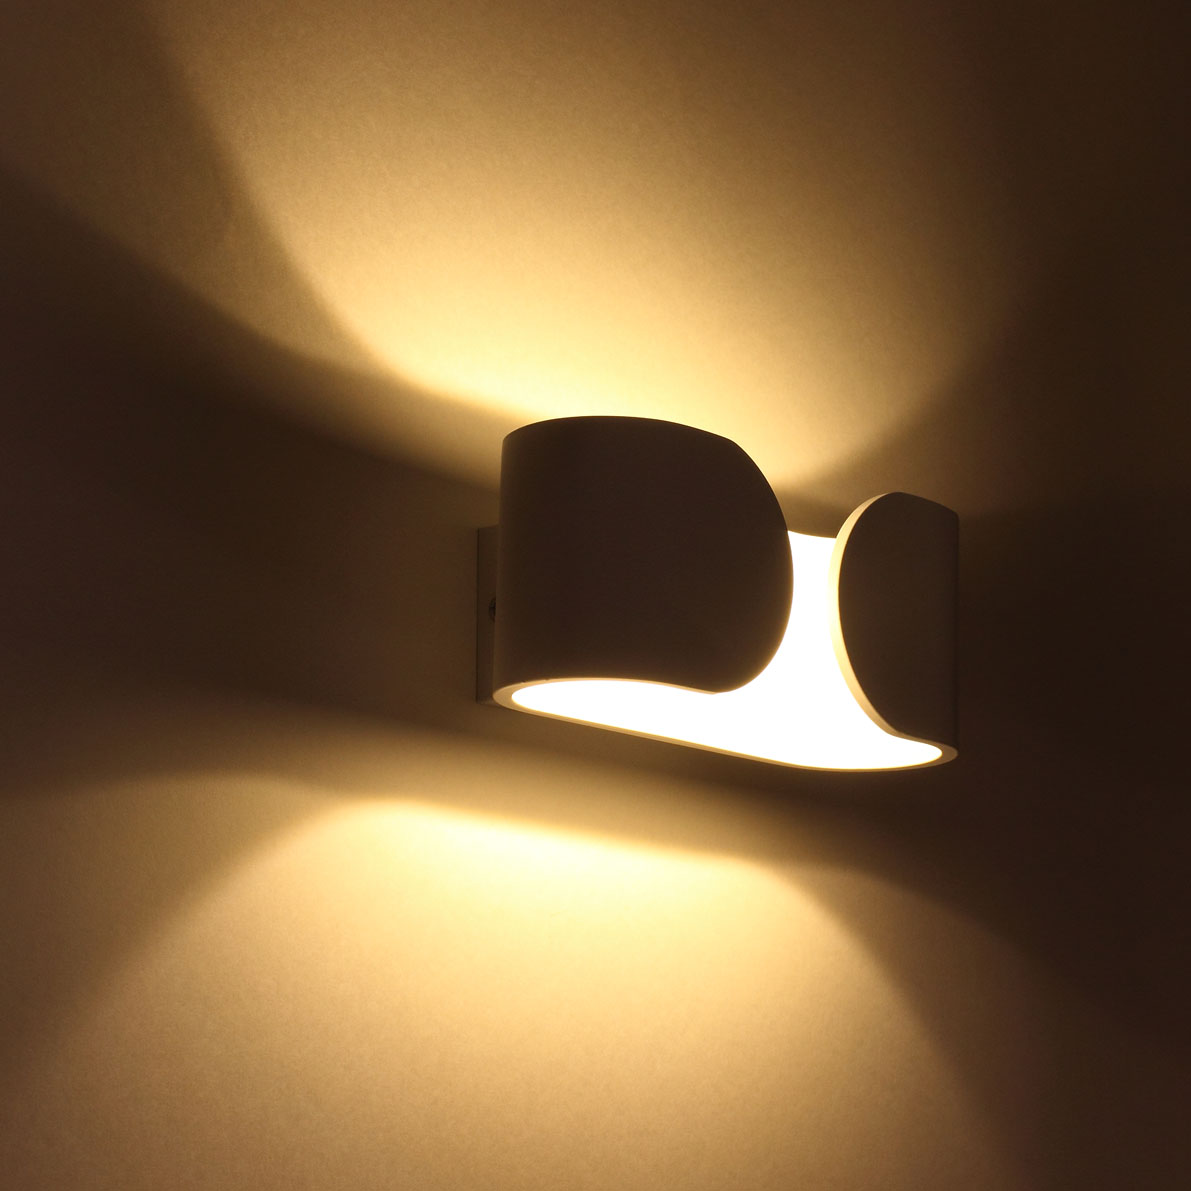 Светодиодные светильники Светодиодный светильник JH-BD04 DHL15 (220V, 6W, белый корпус, warm white)